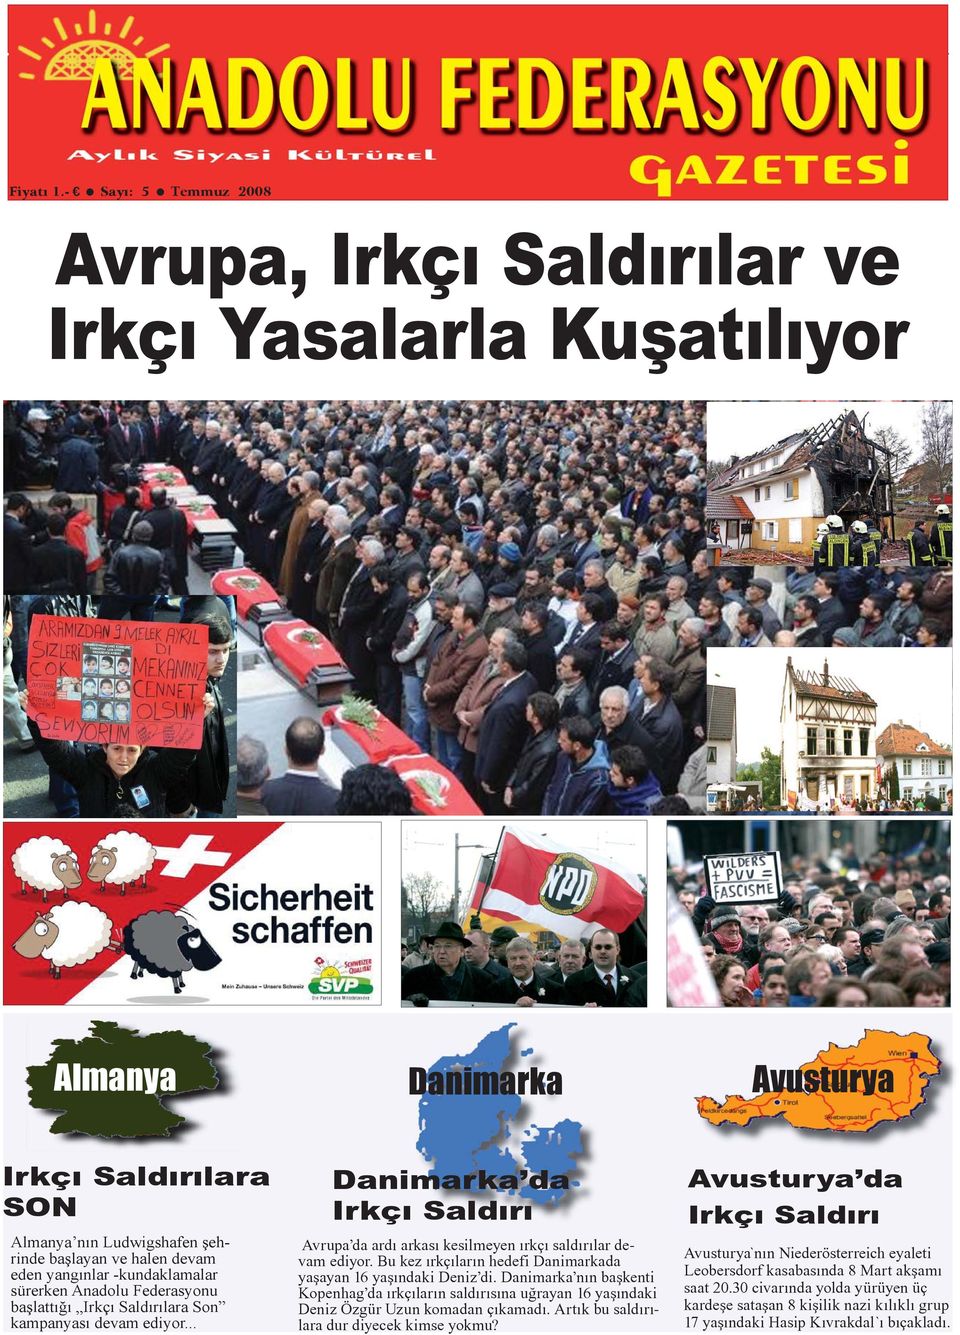 yangınlar -kundaklamalar sürerken Anadolu Federasyonu başlattığı Irkçı Saldırılara Son kampanyası devam ediyor.